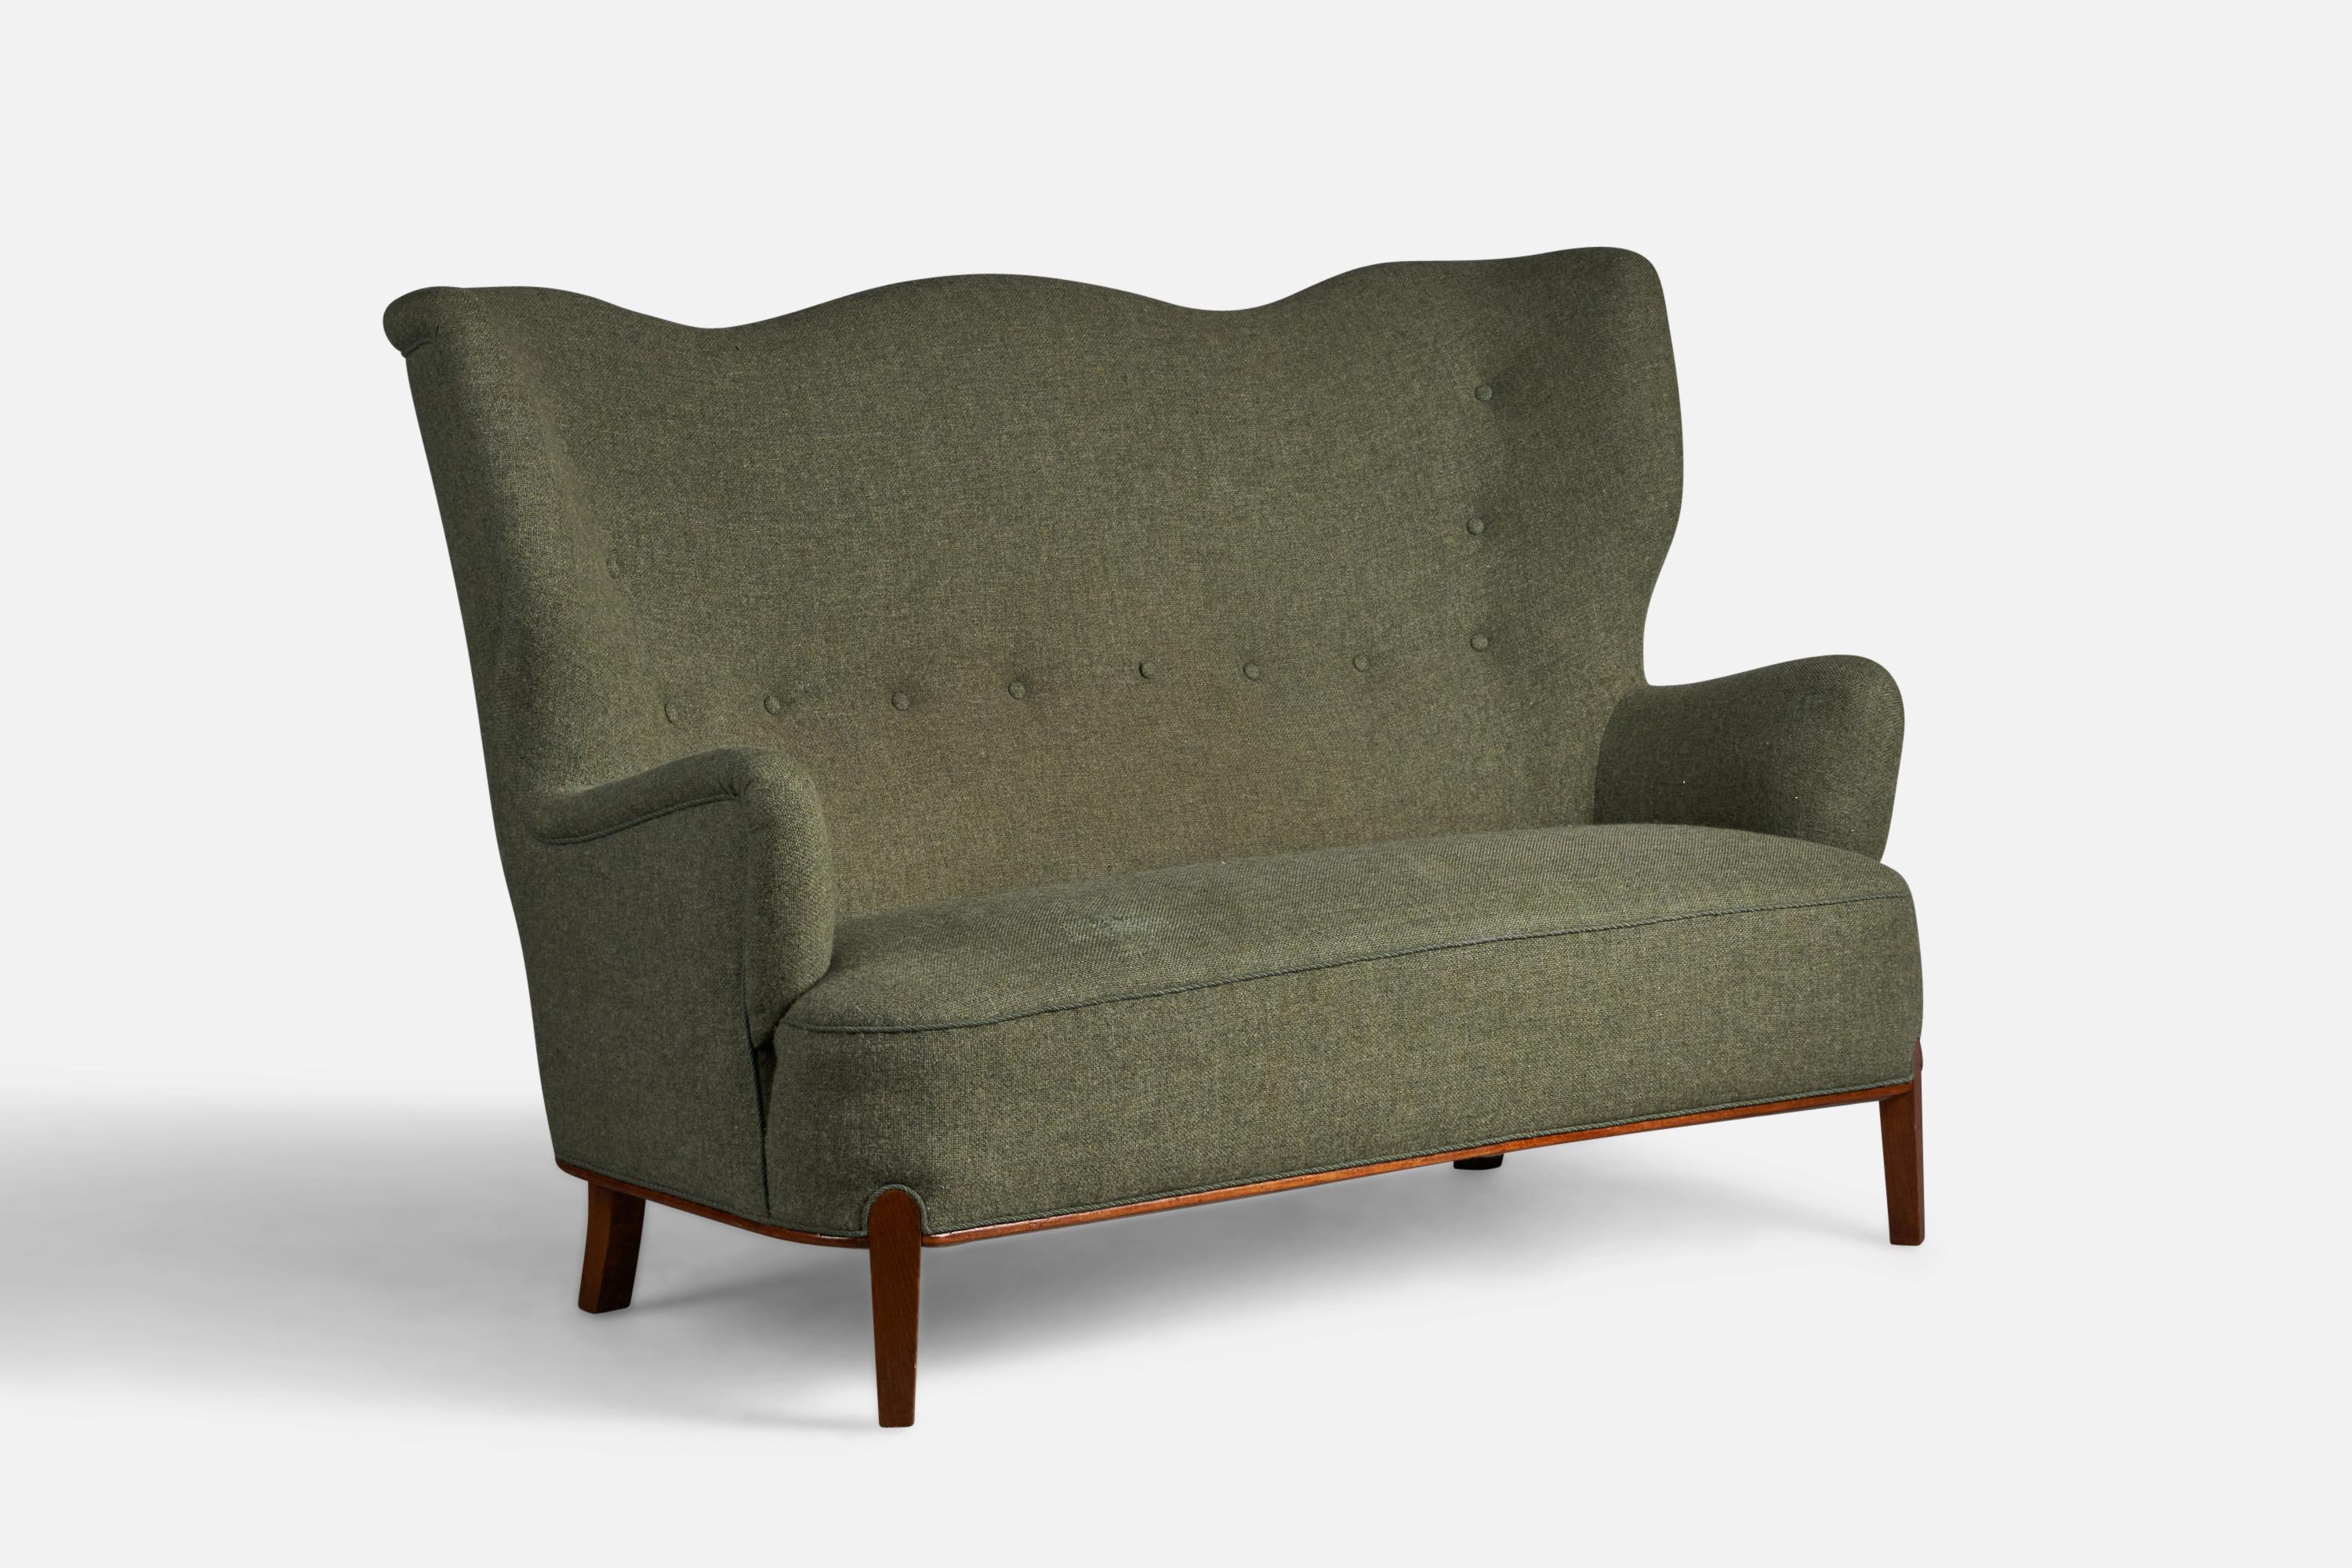 Zweisitzer-Sofa oder -Sitzgruppe aus gebeizter Buche und grünem Stoff, entworfen von Bertil Söderberg und hergestellt von Nordiska Kompaniet, Schweden, 1940er Jahre.

18